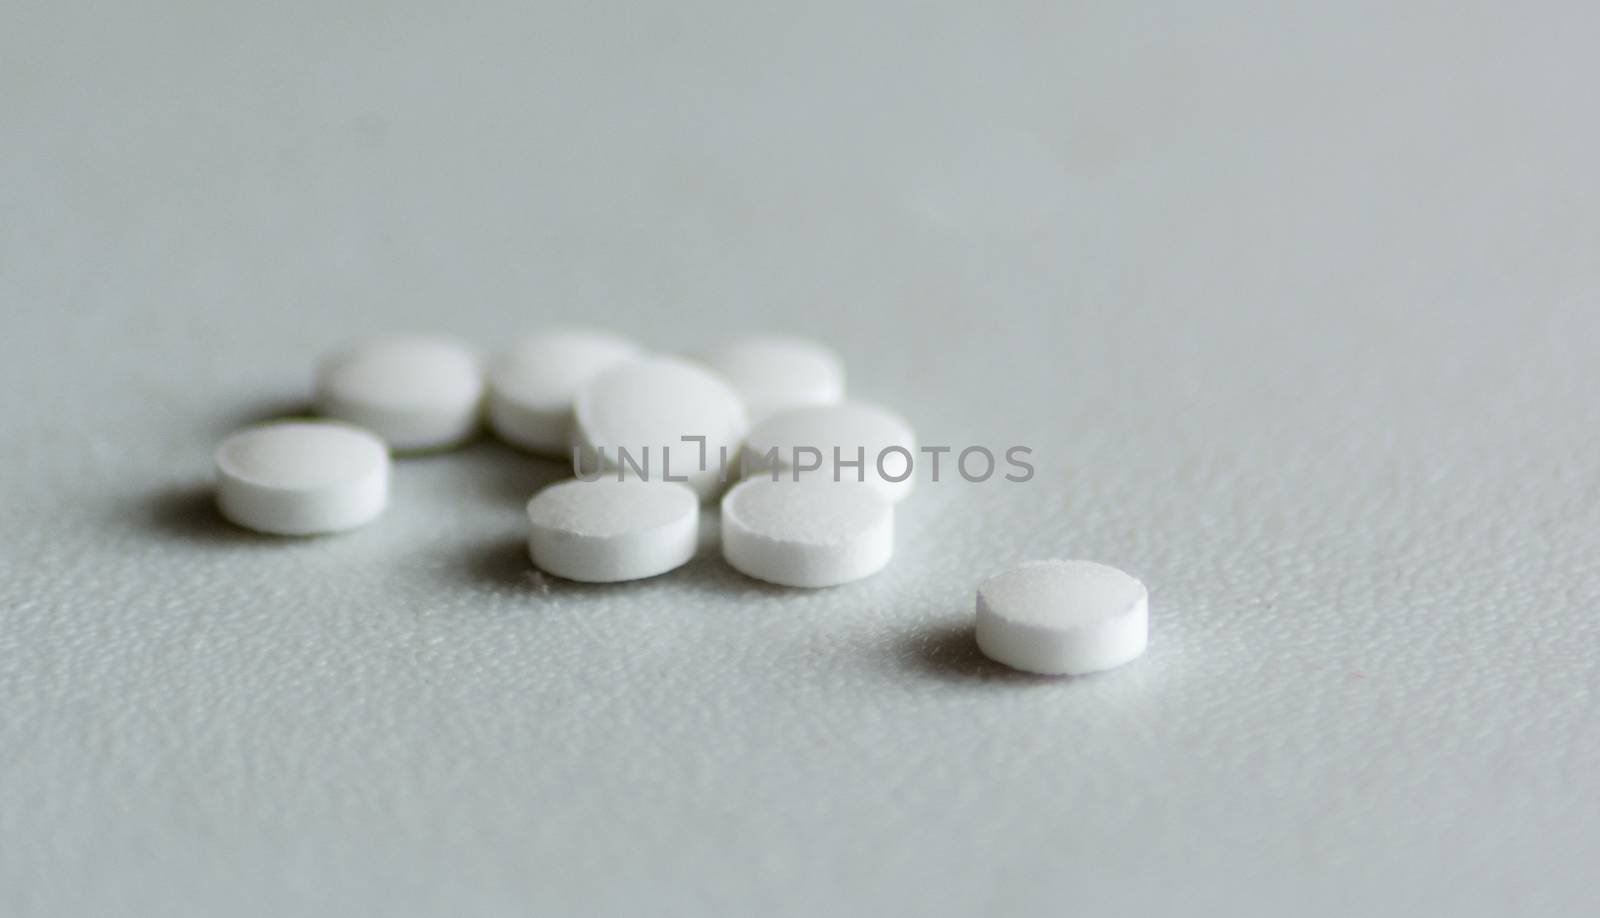 Sweetener pills by rarrarorro